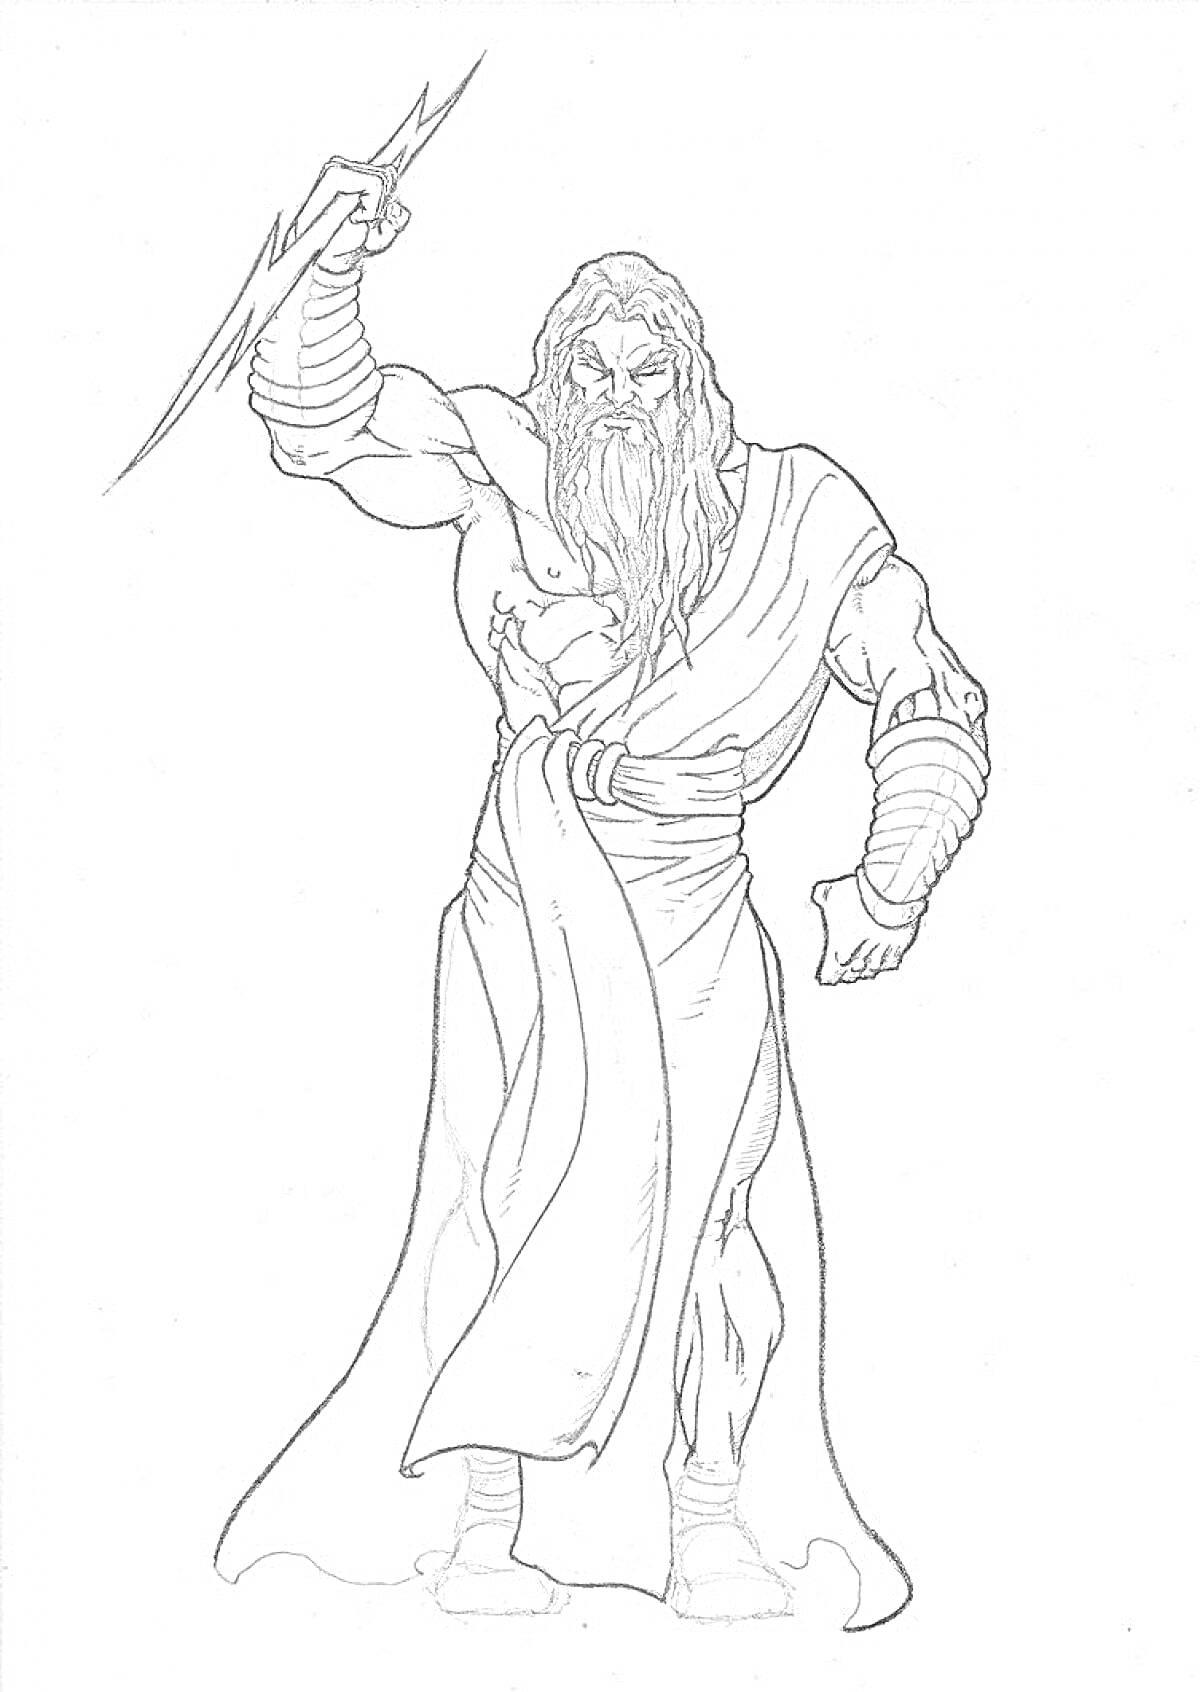 Зевс с молнией в руке, бородатый мужчина в древнегреческом одеянии, с броней на руках